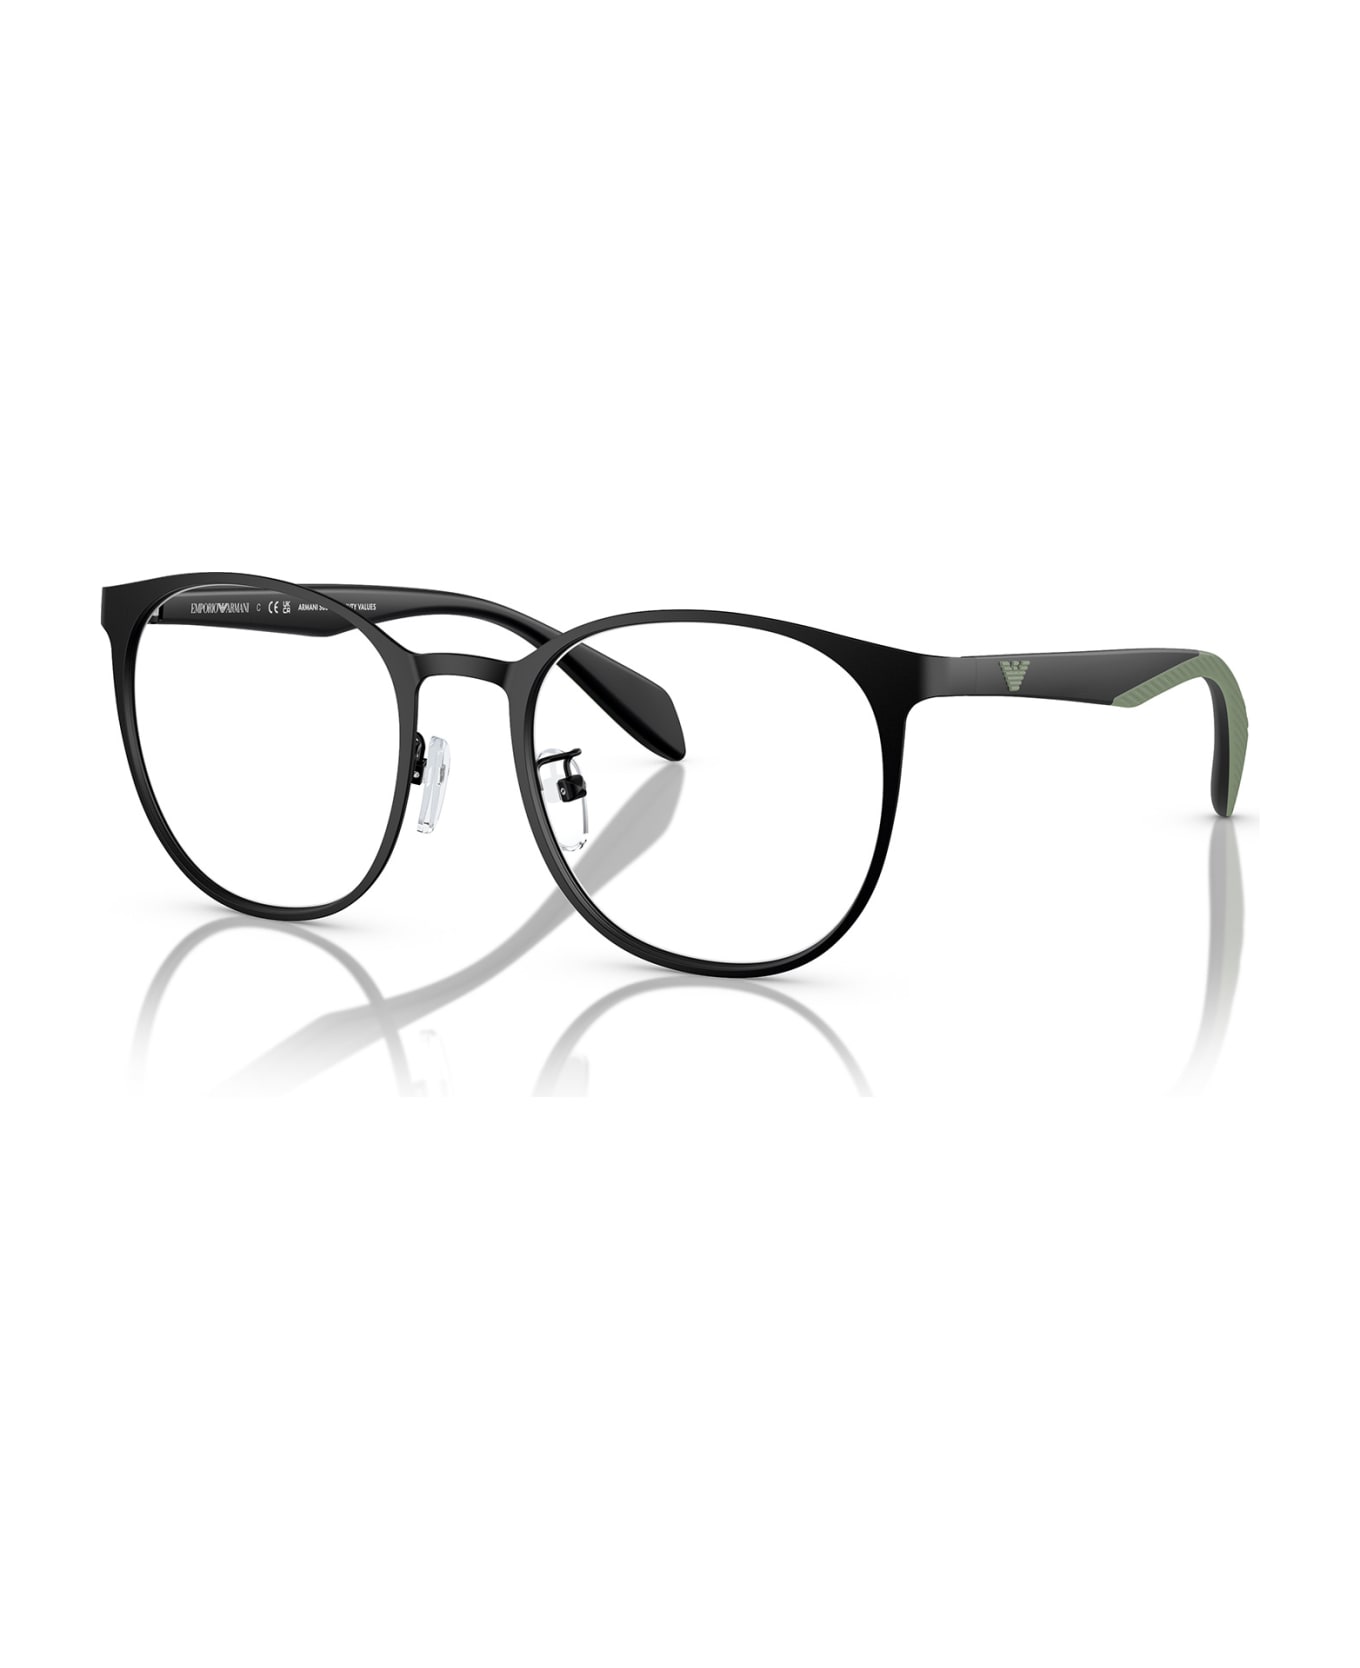 Emporio Armani Ea1148 Matte Black Glasses - Matte Black